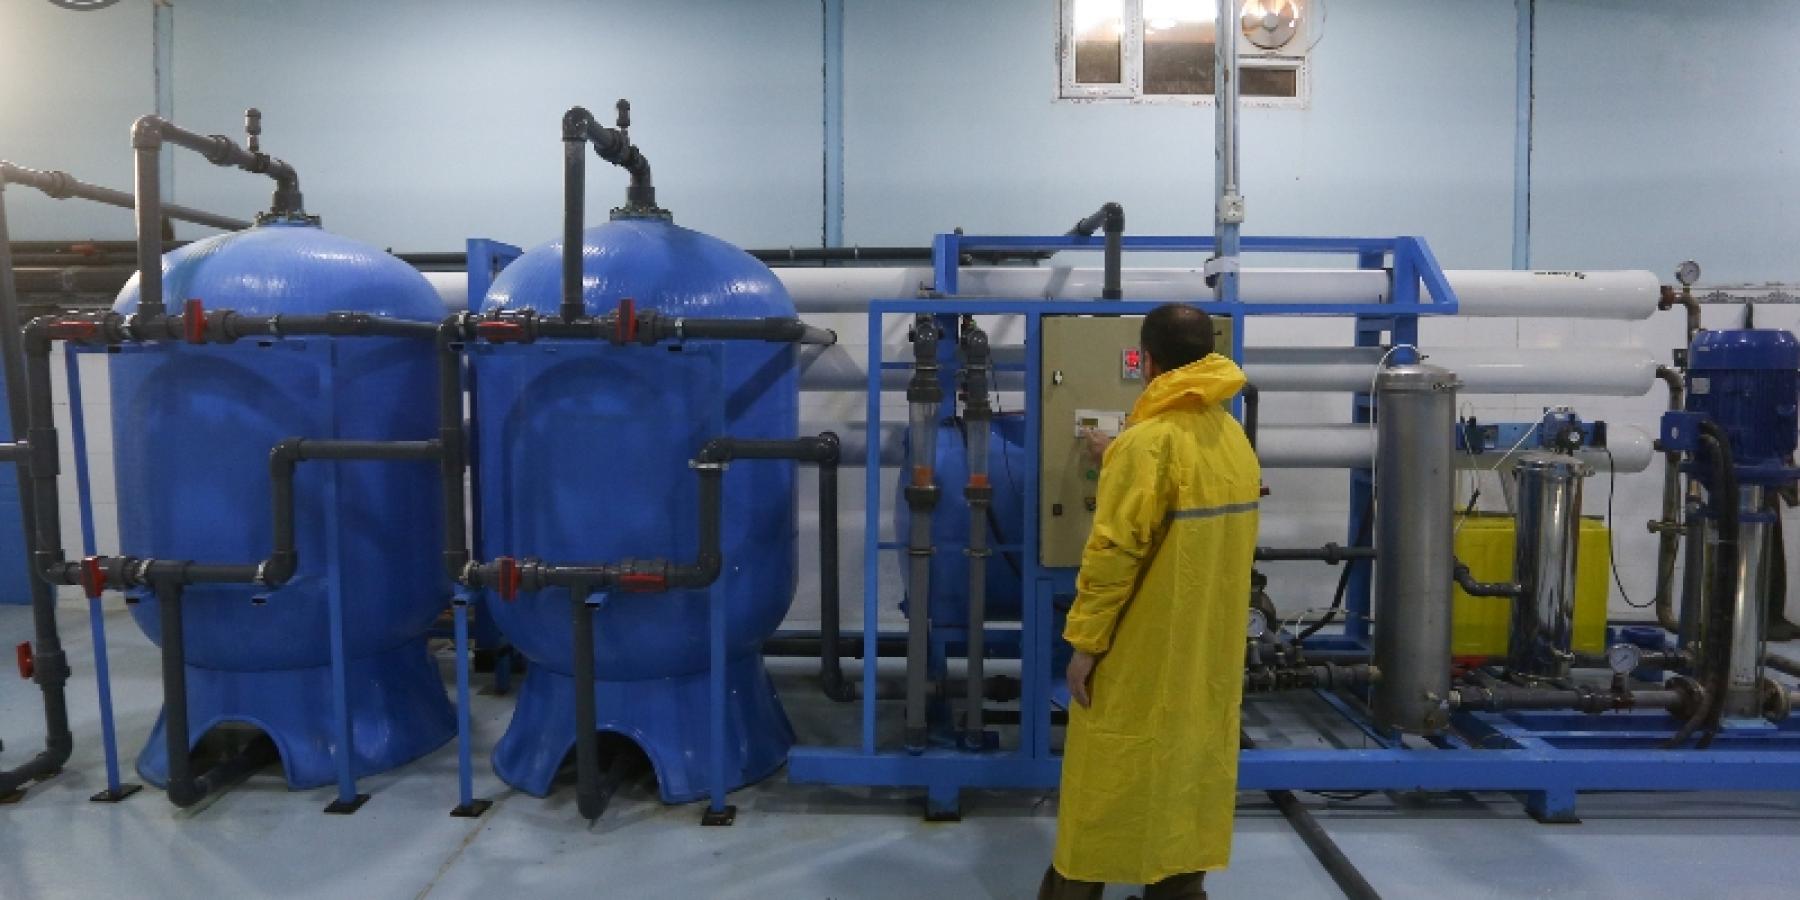 وحدة معالجة مياه الشرب (RO) في العتبة العلوية المقدسة توفر أكثر من 300 ألف لتر في اليوم الواحد لزائري مرقد أمير المؤمنين(ع)